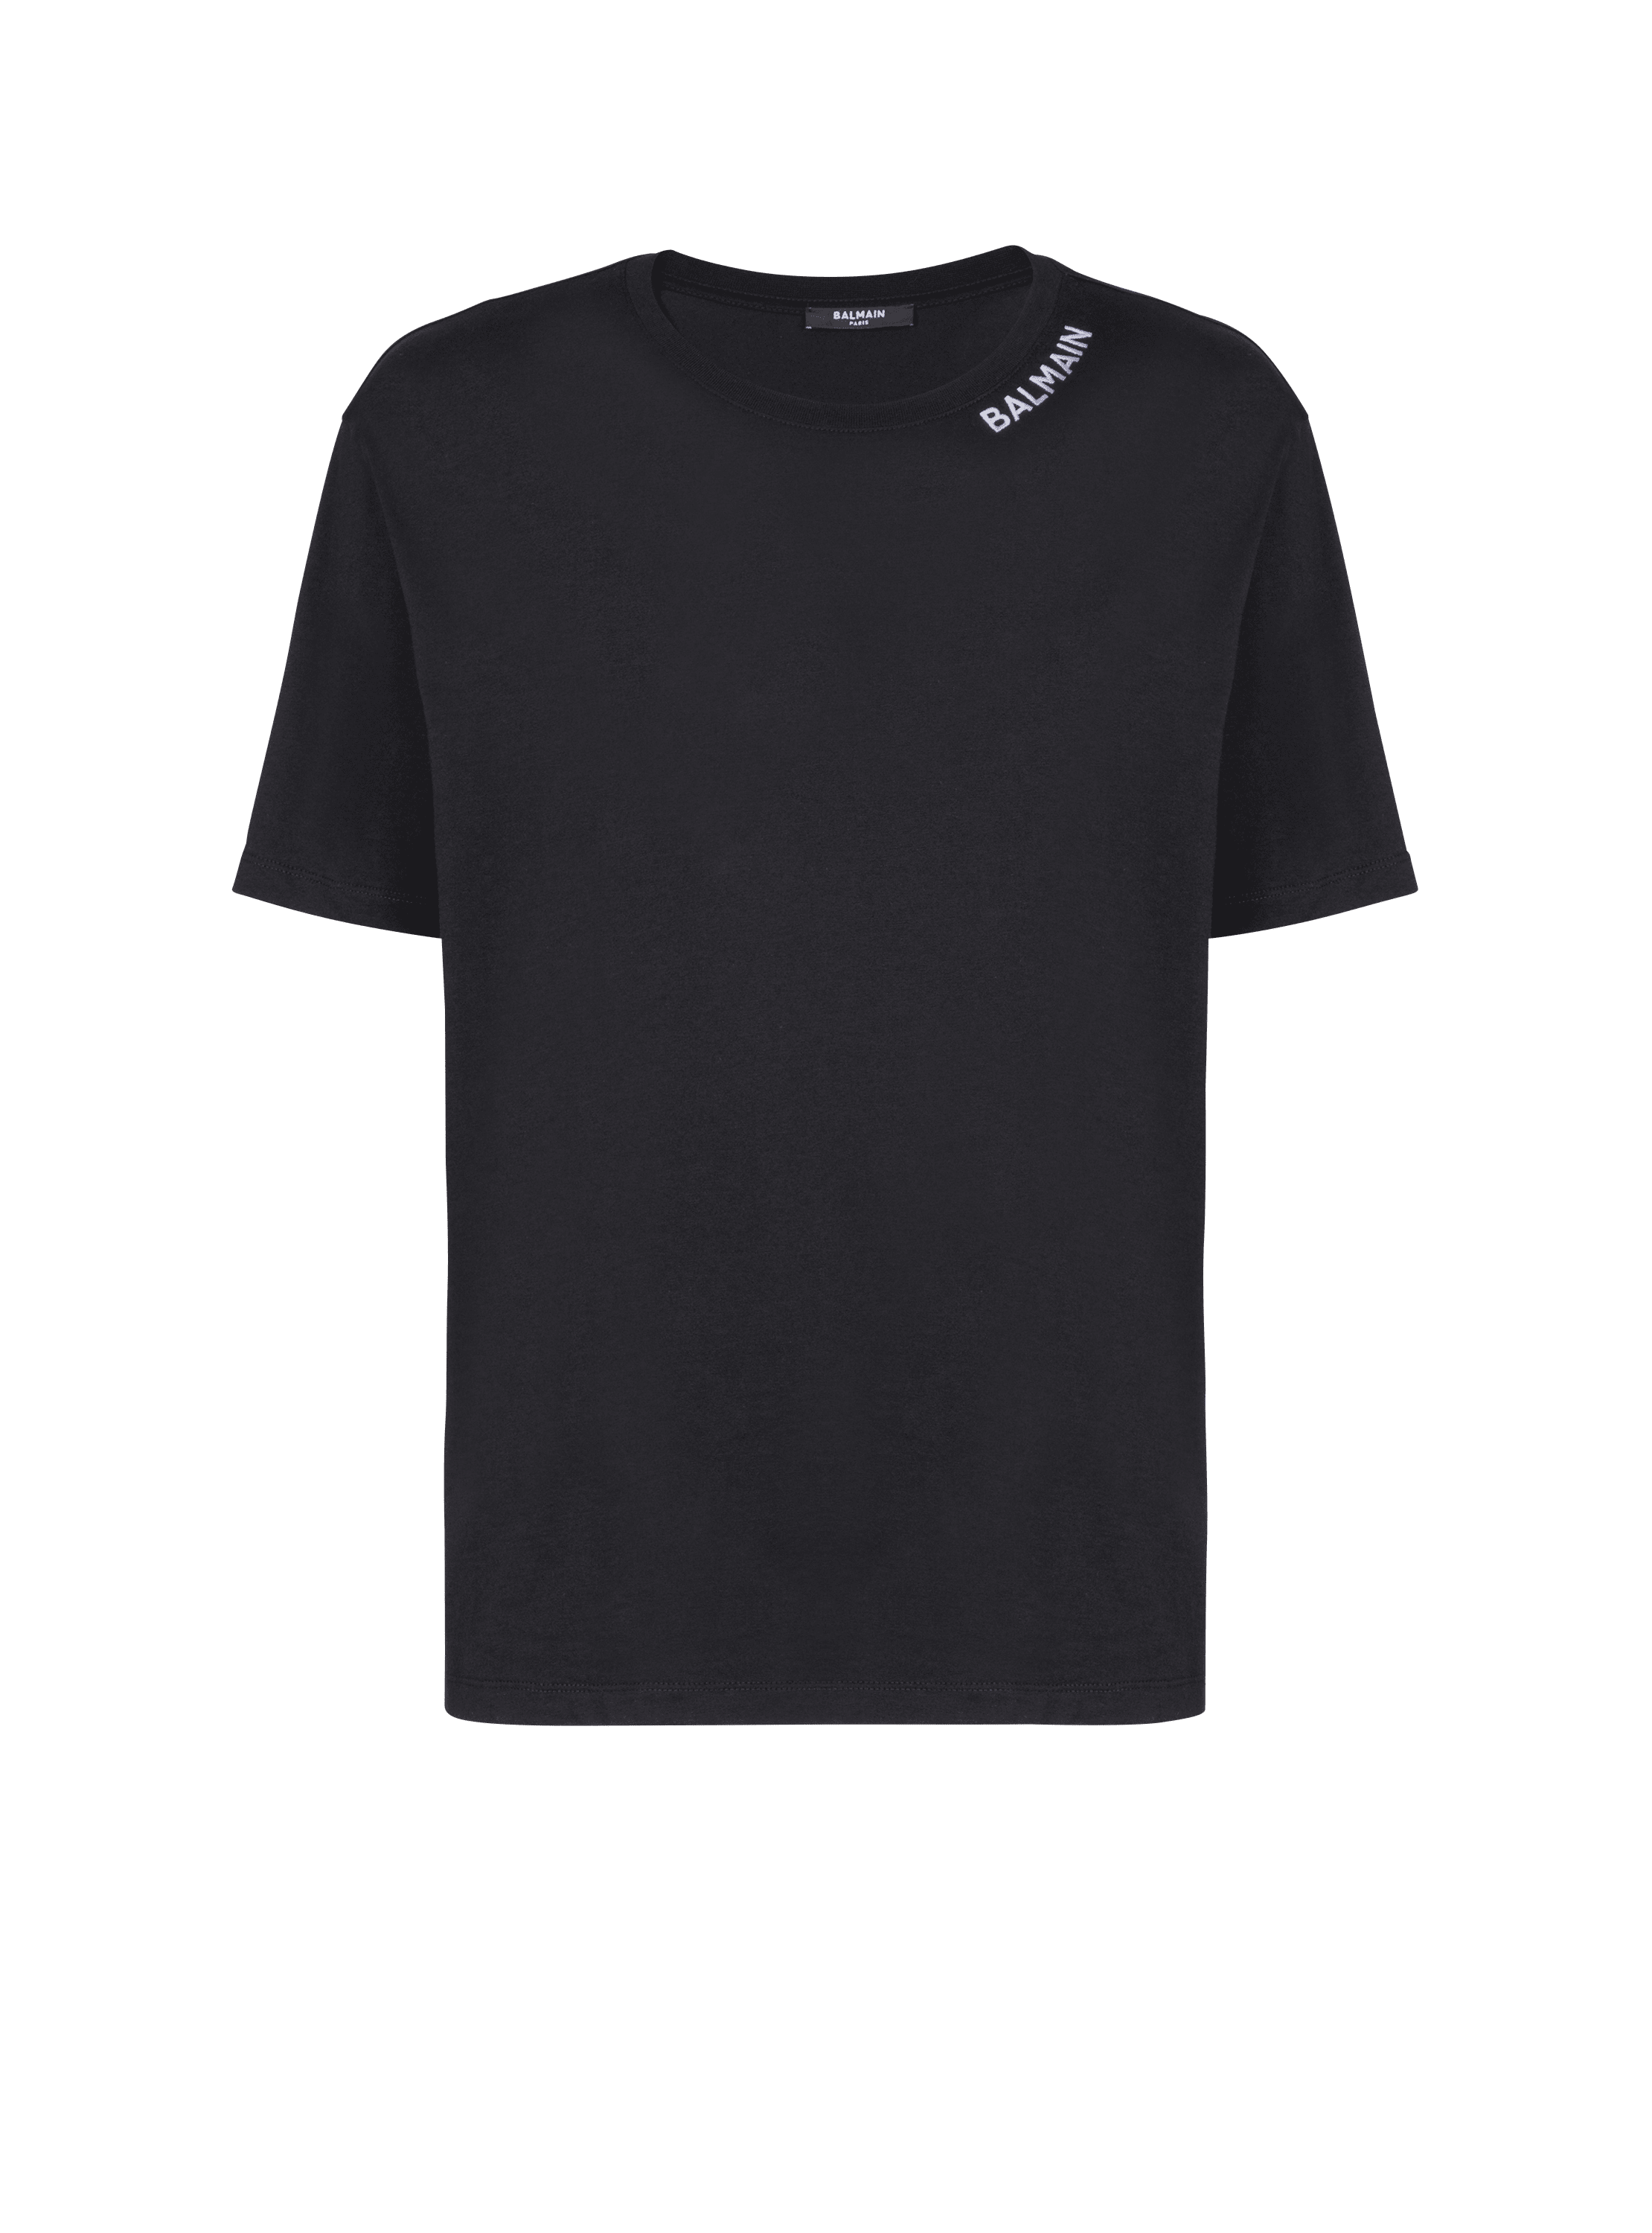 발망 자수 장식 티셔츠, 검정색, hi-res